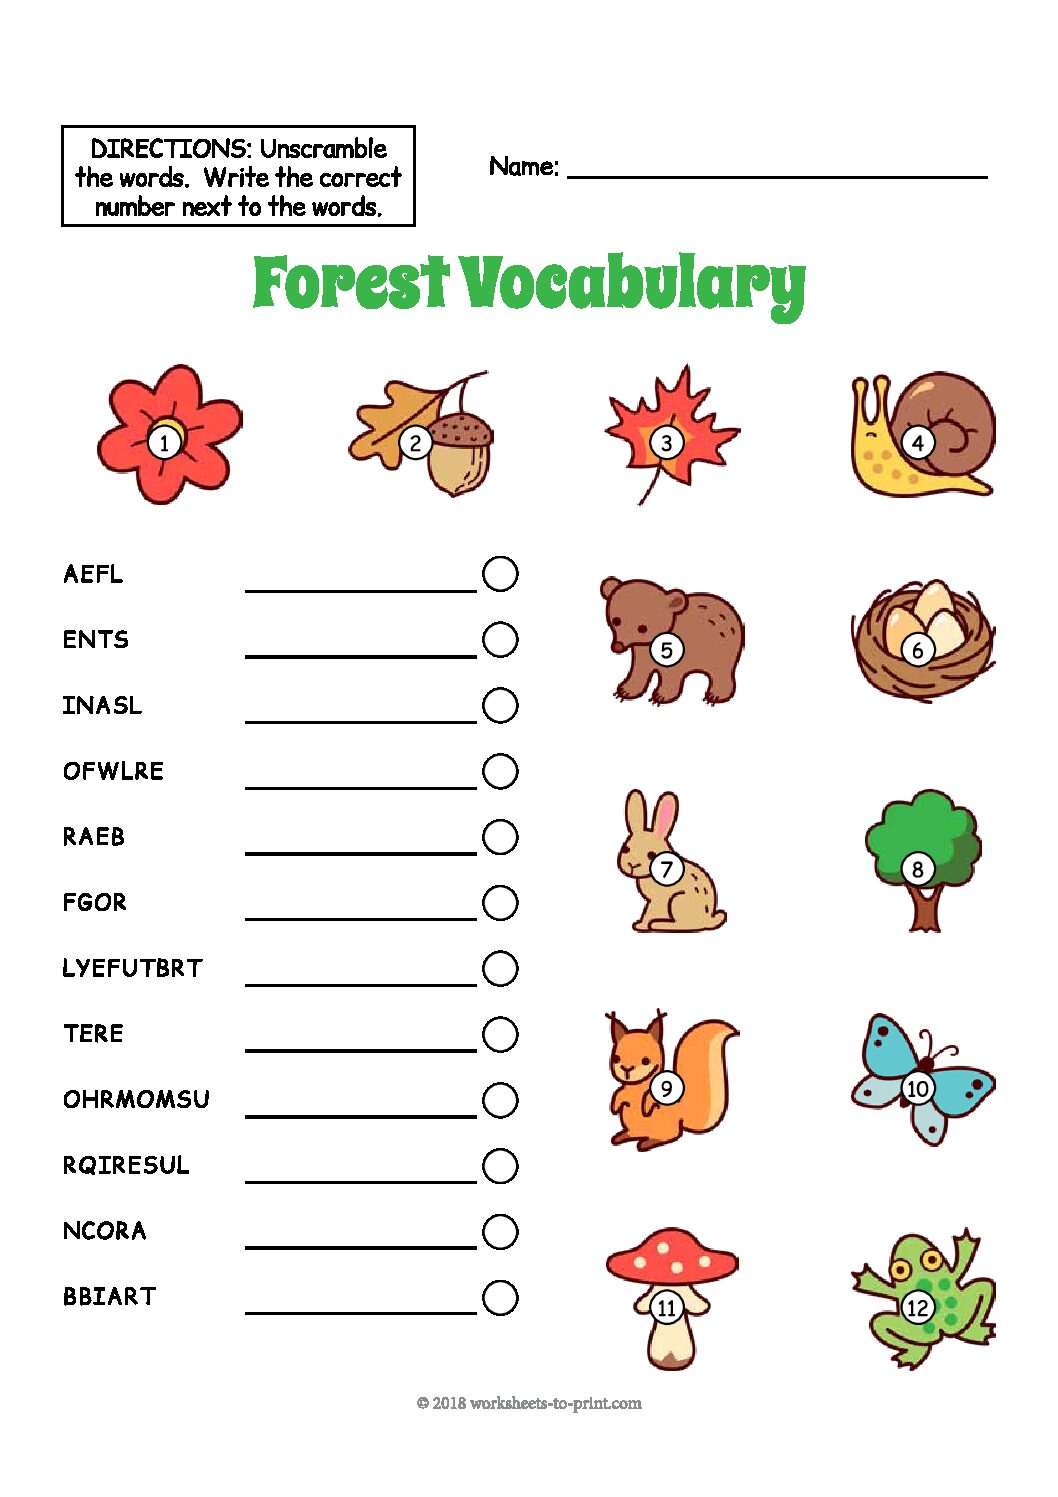 Forest Vocabulary Worksheet - Language Advisor